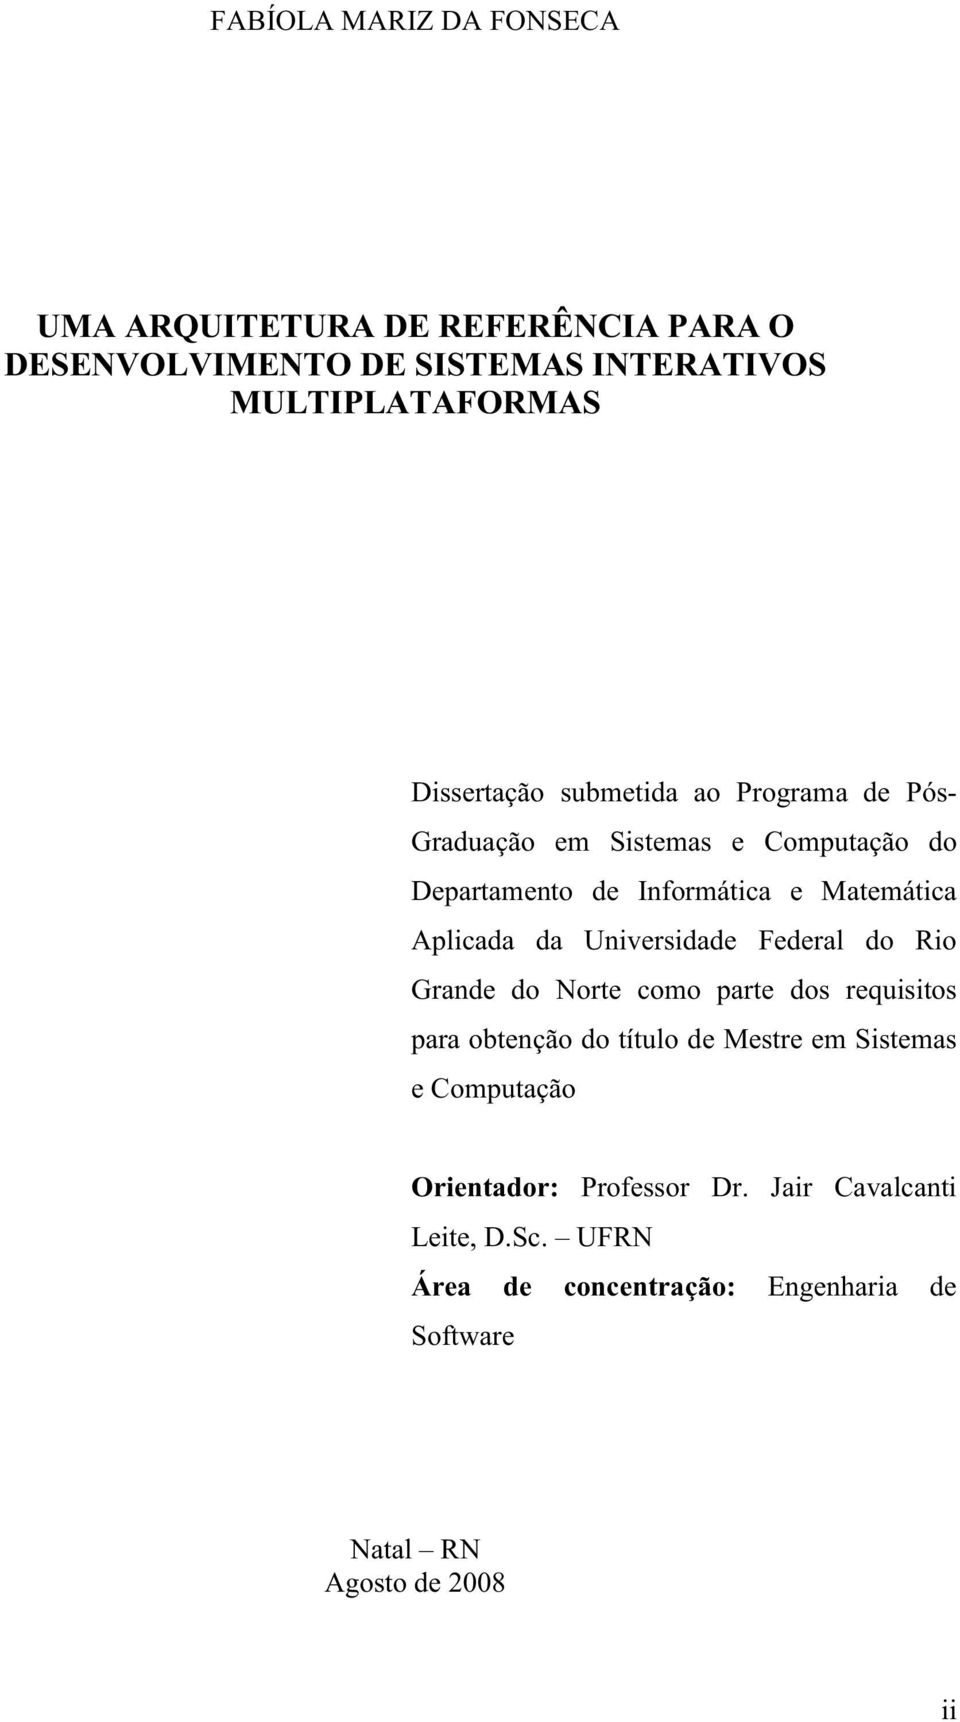 Aplicada da Universidade Federal do Rio Grande do Norte como parte dos requisitos para obtenção do título de Mestre em Sistemas